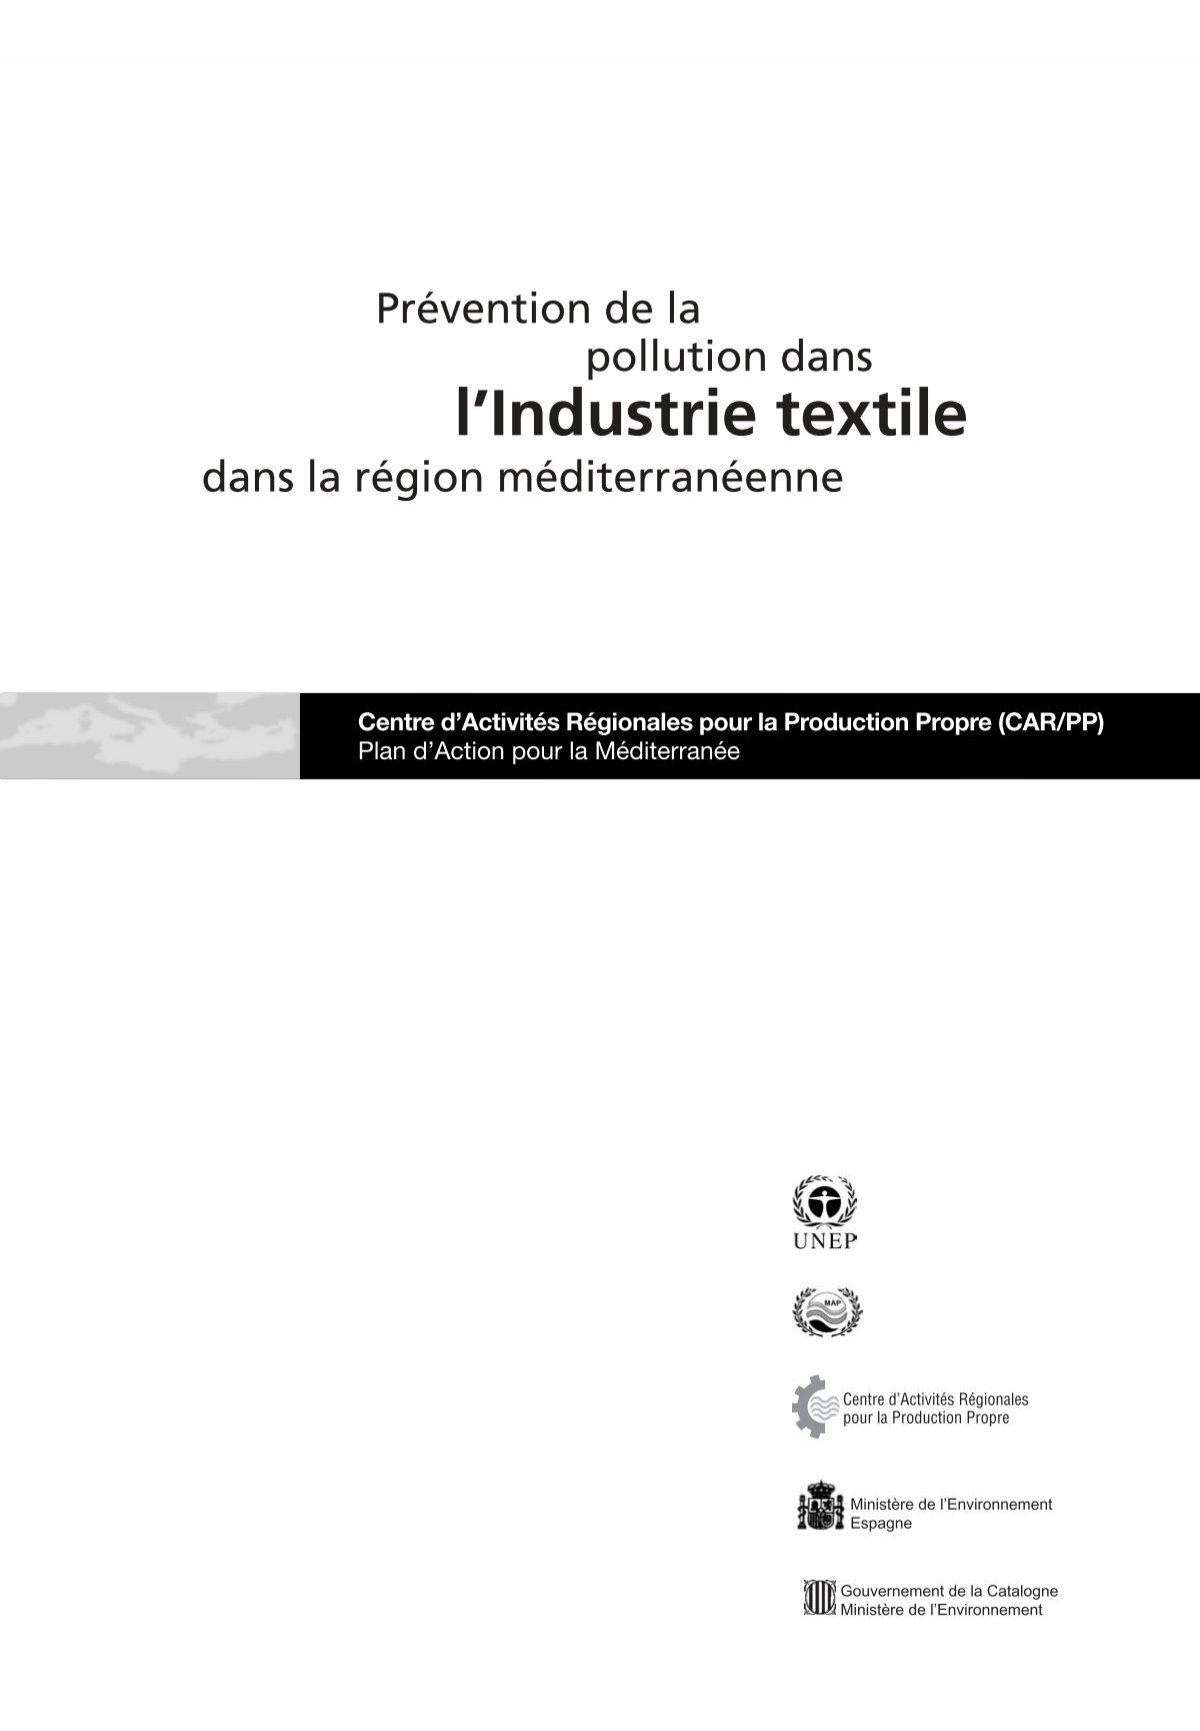 IDEAL Teinture Liquide textile Maxi - Pour 27 jeans - Noir